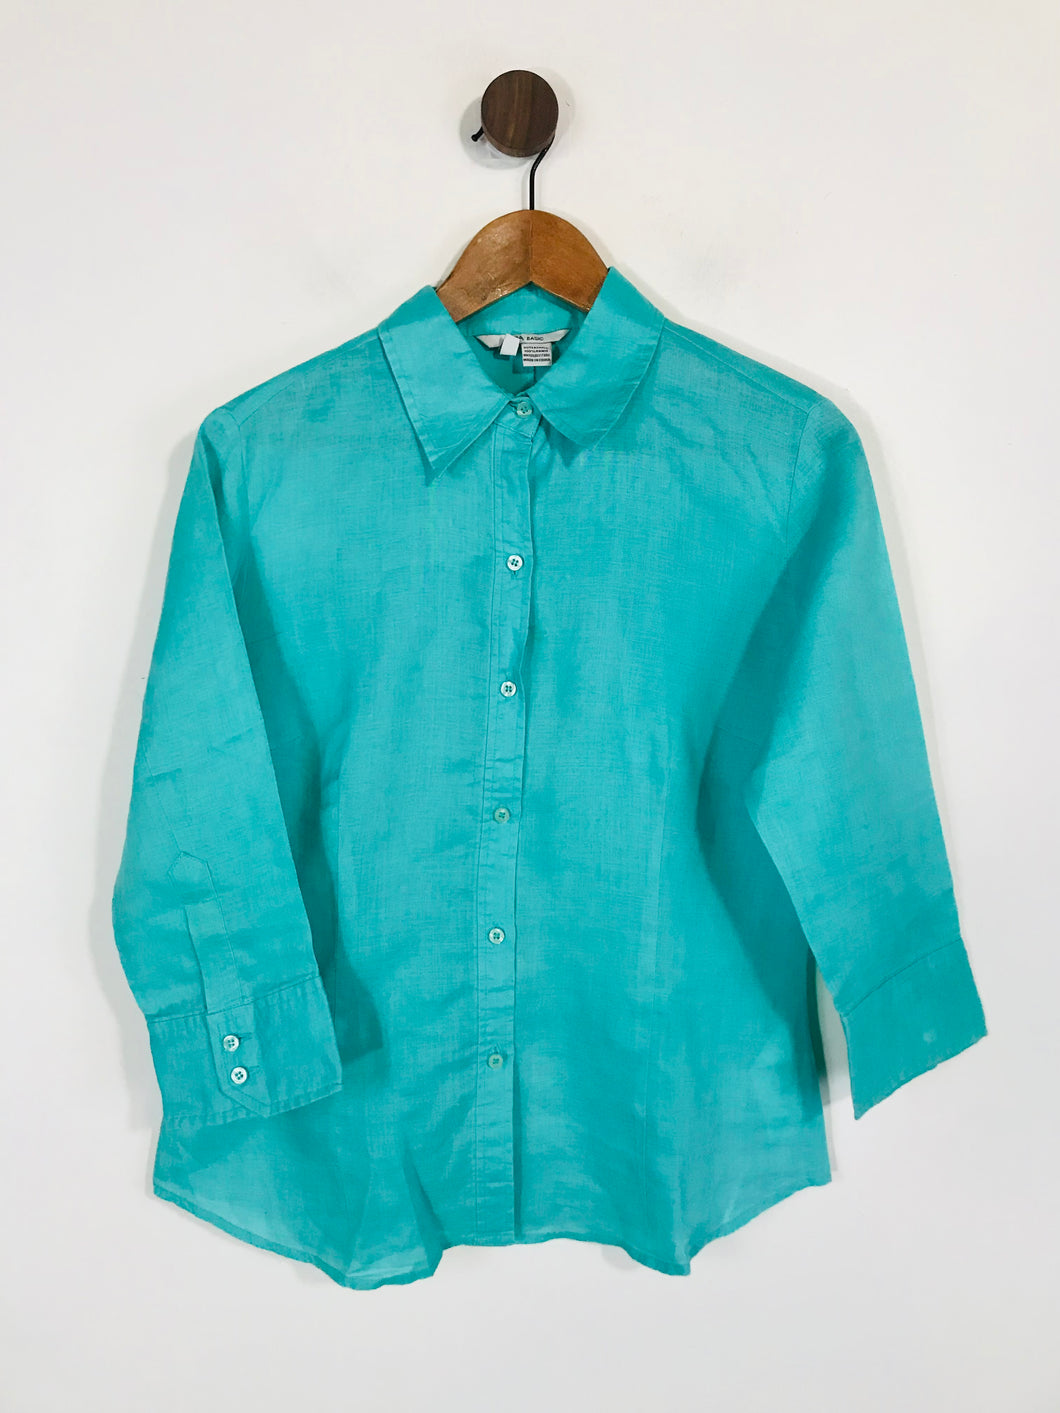 Zara Women's Button-Up Shirt | L UK14 | Blue